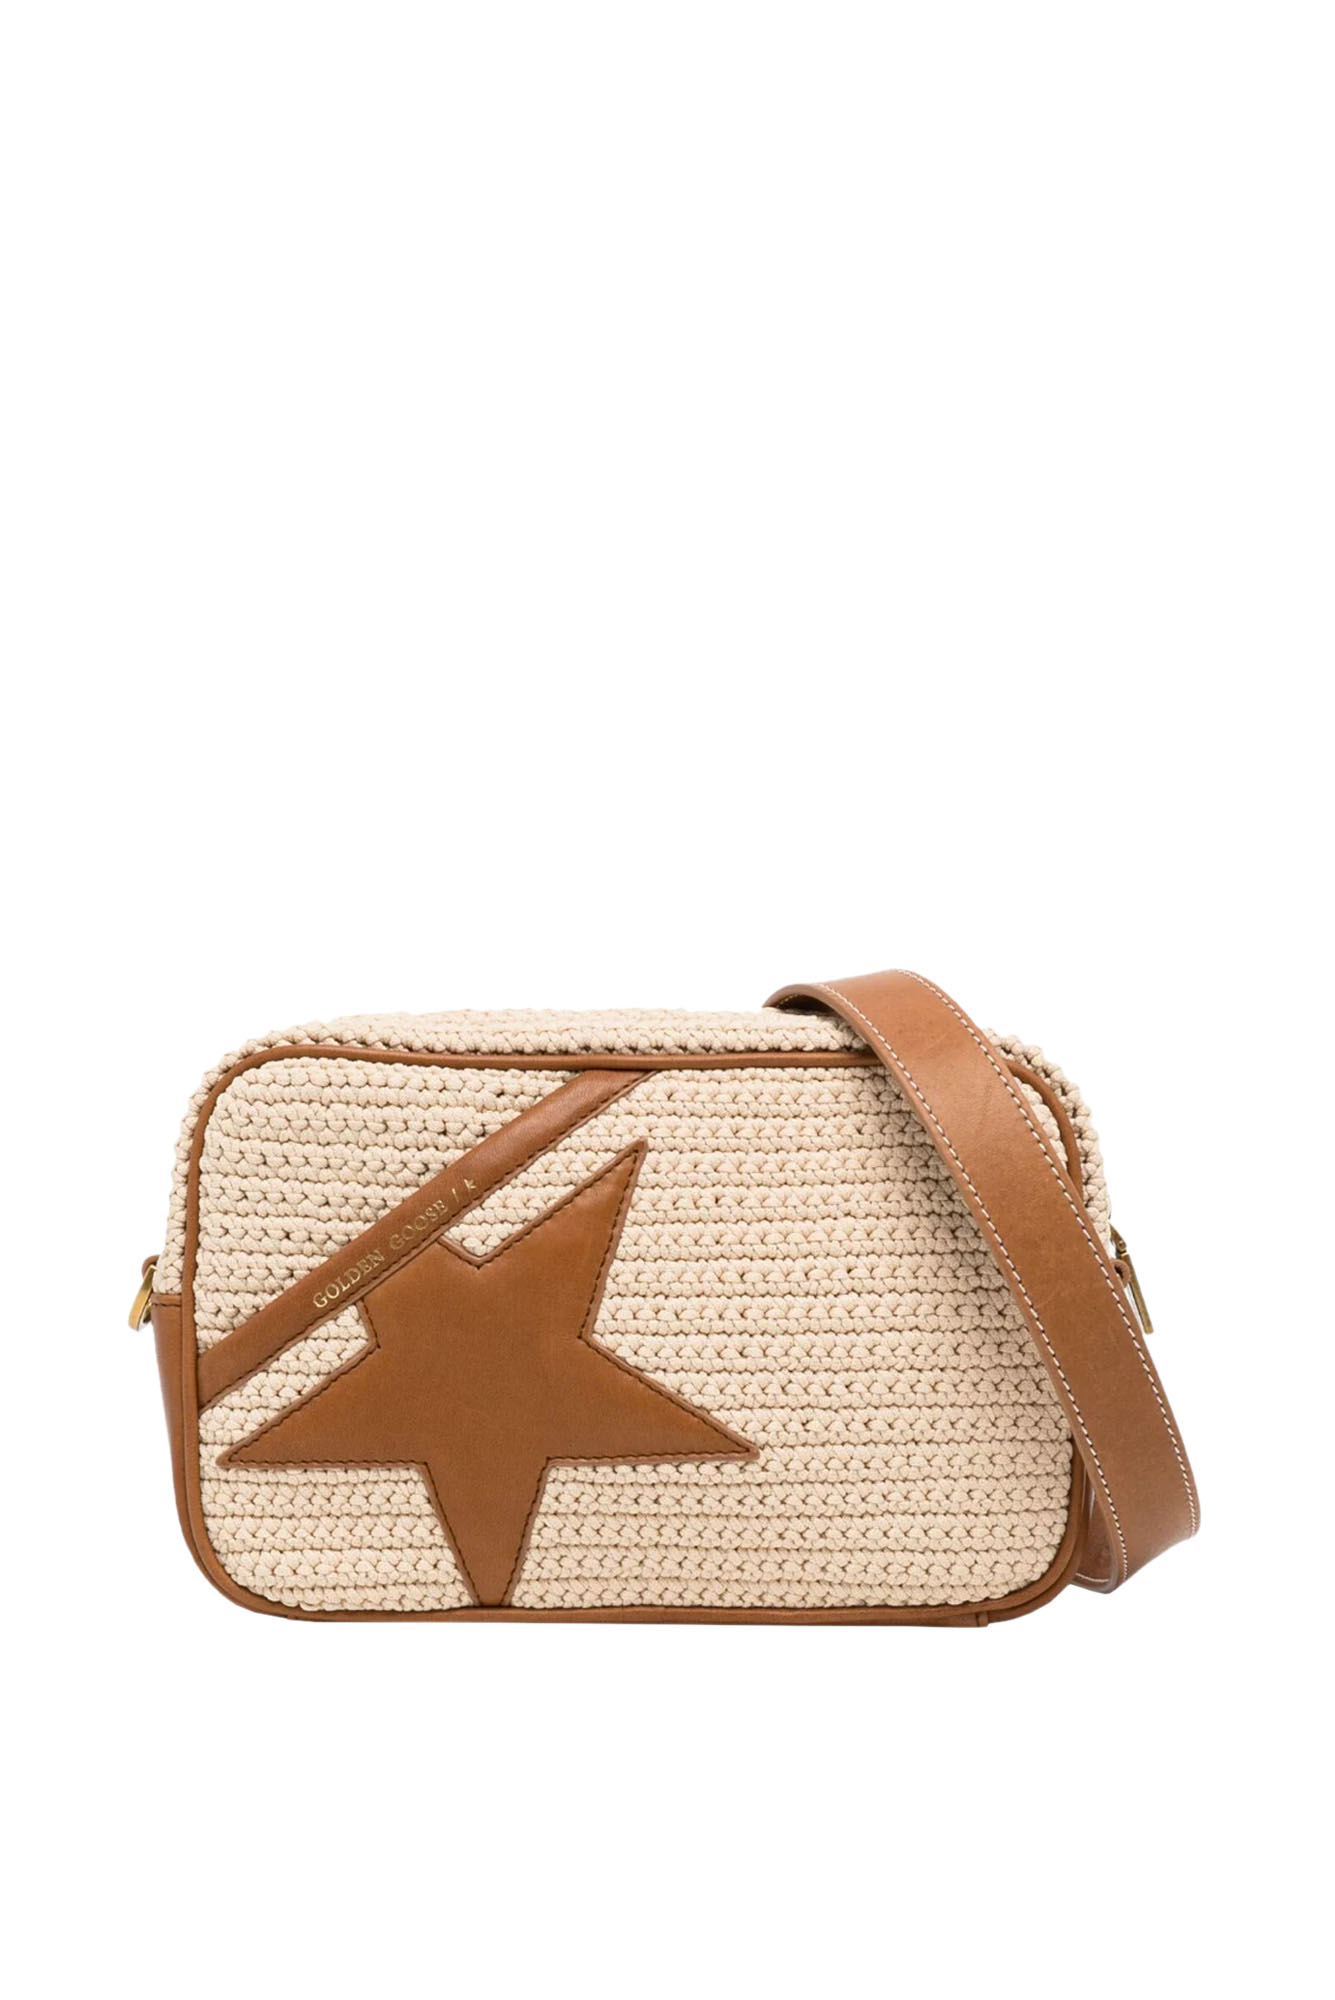 Golden Goose Star Large Crochet Body Shoulder Bag In Light Brown